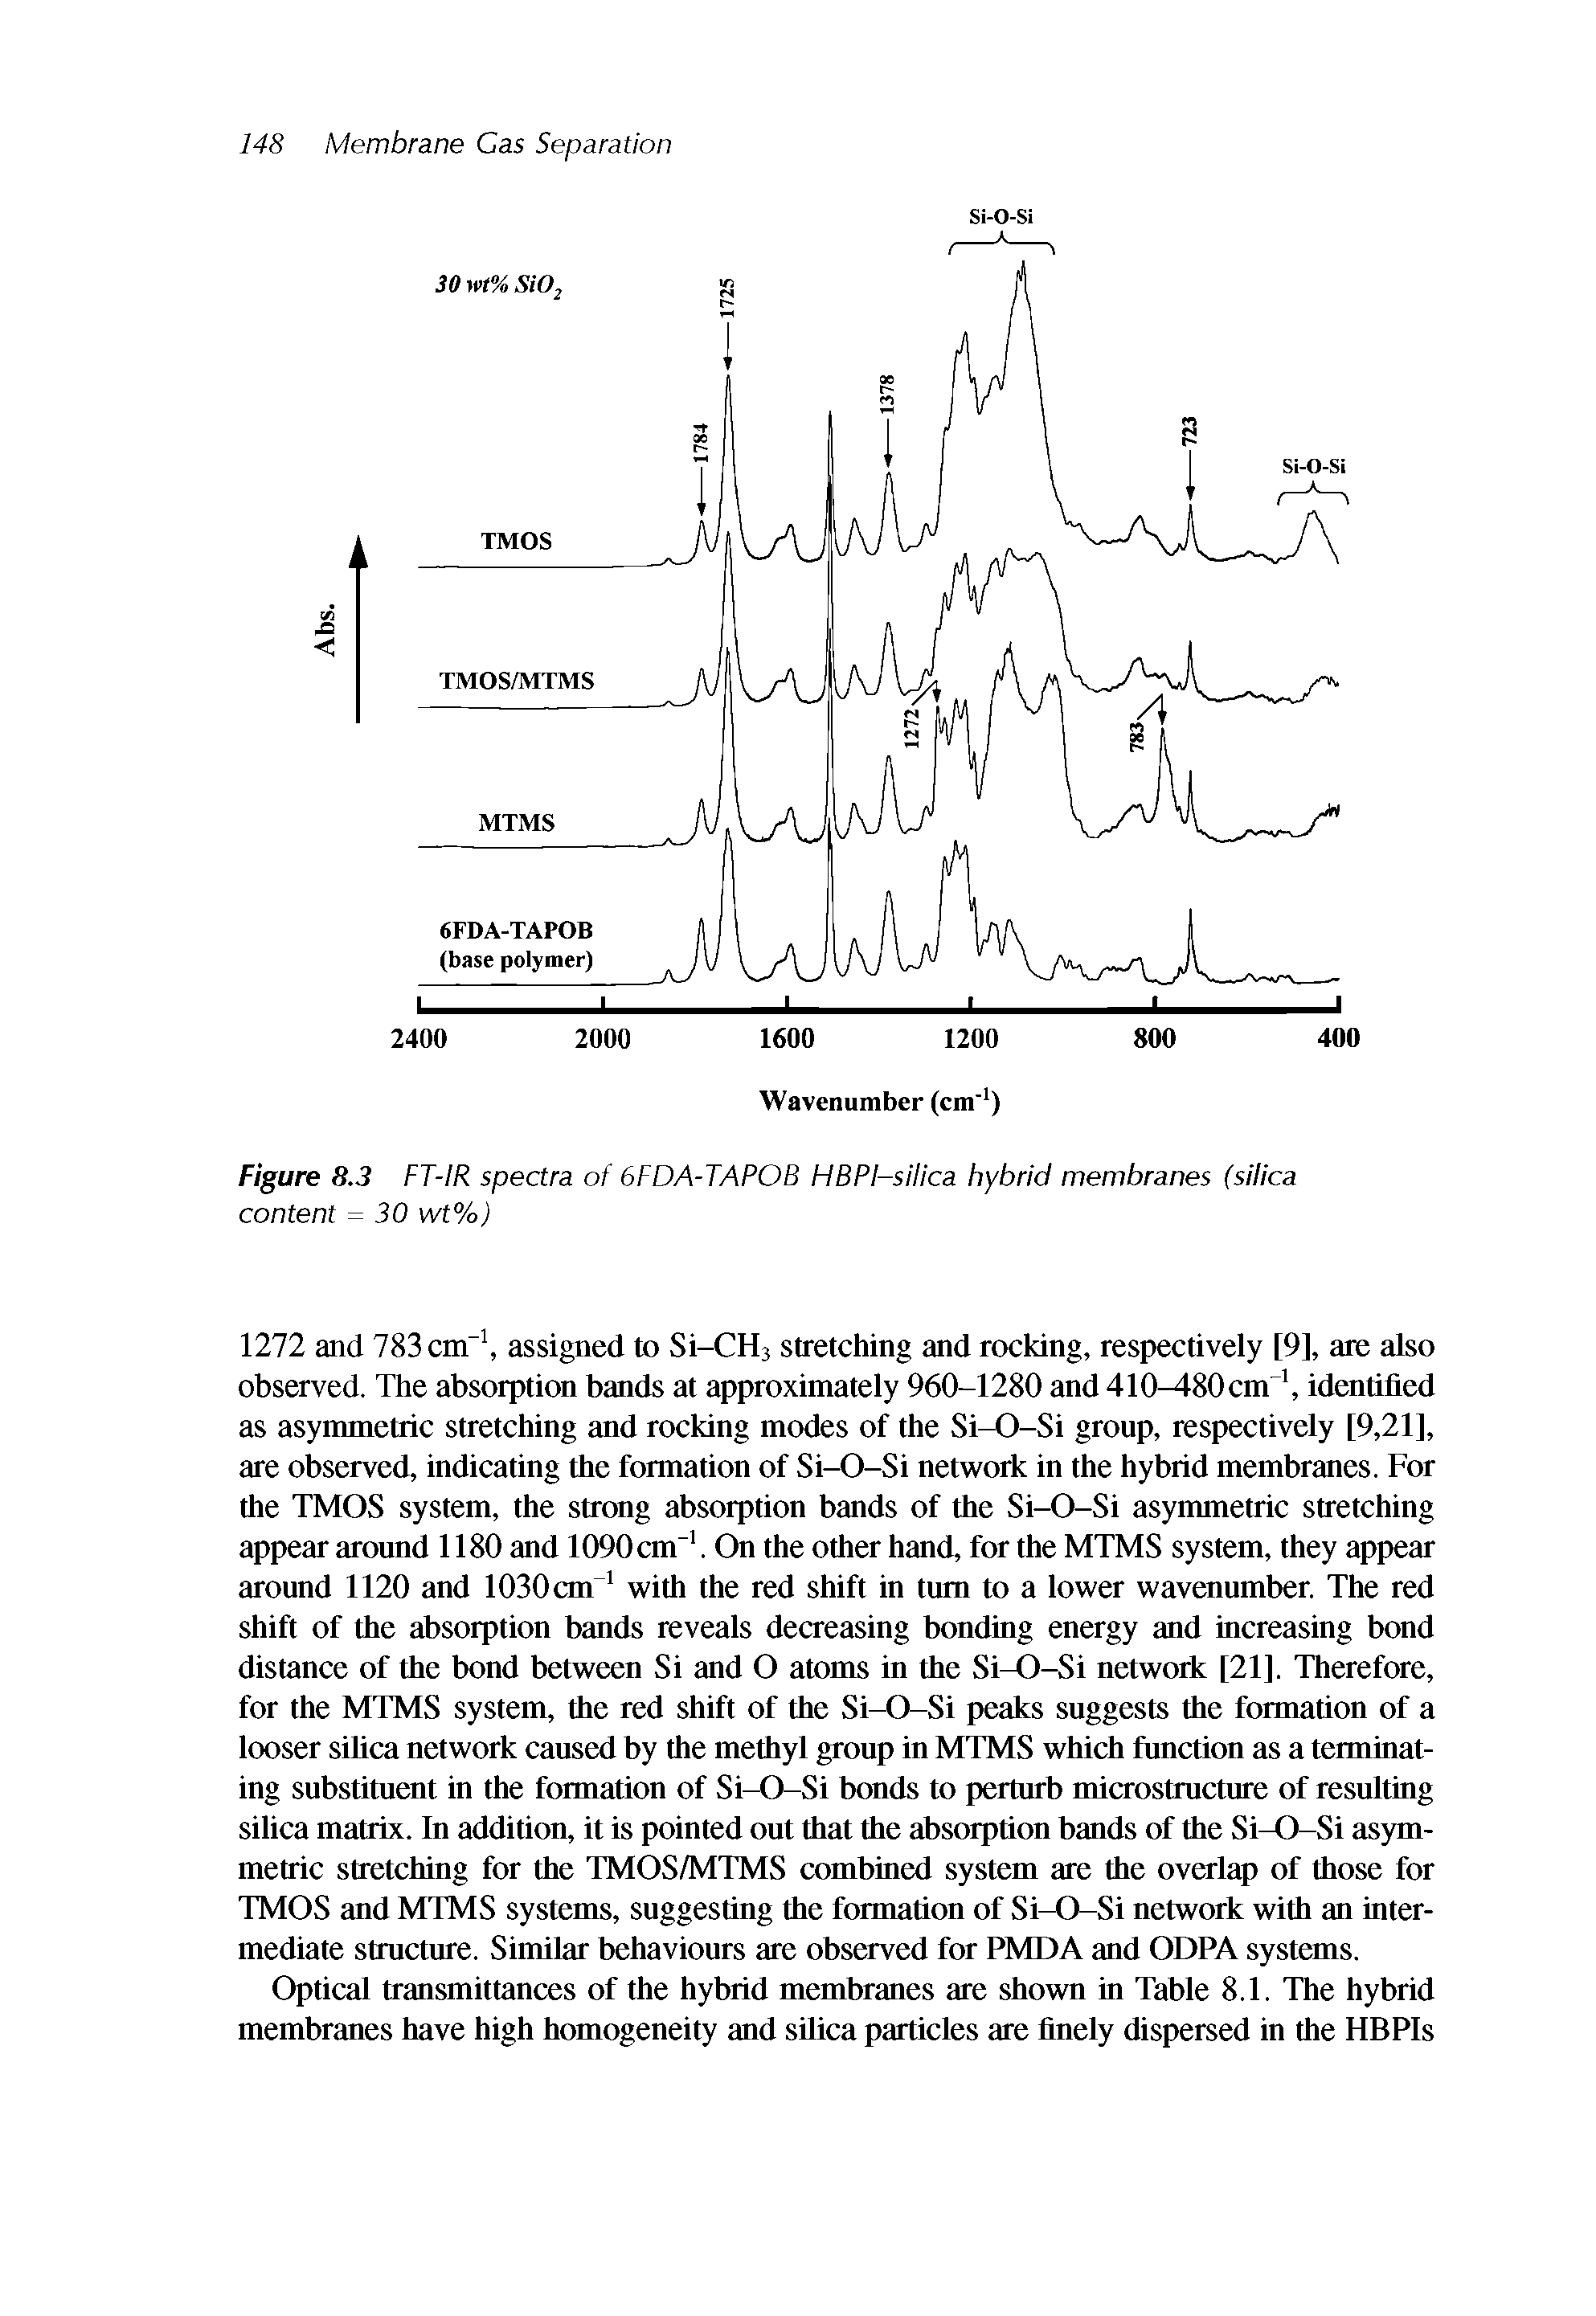 Figure 8.3 FT-IR spectra of 6FDA-TAPOB HBPI-silica hybrid membranes (silica...